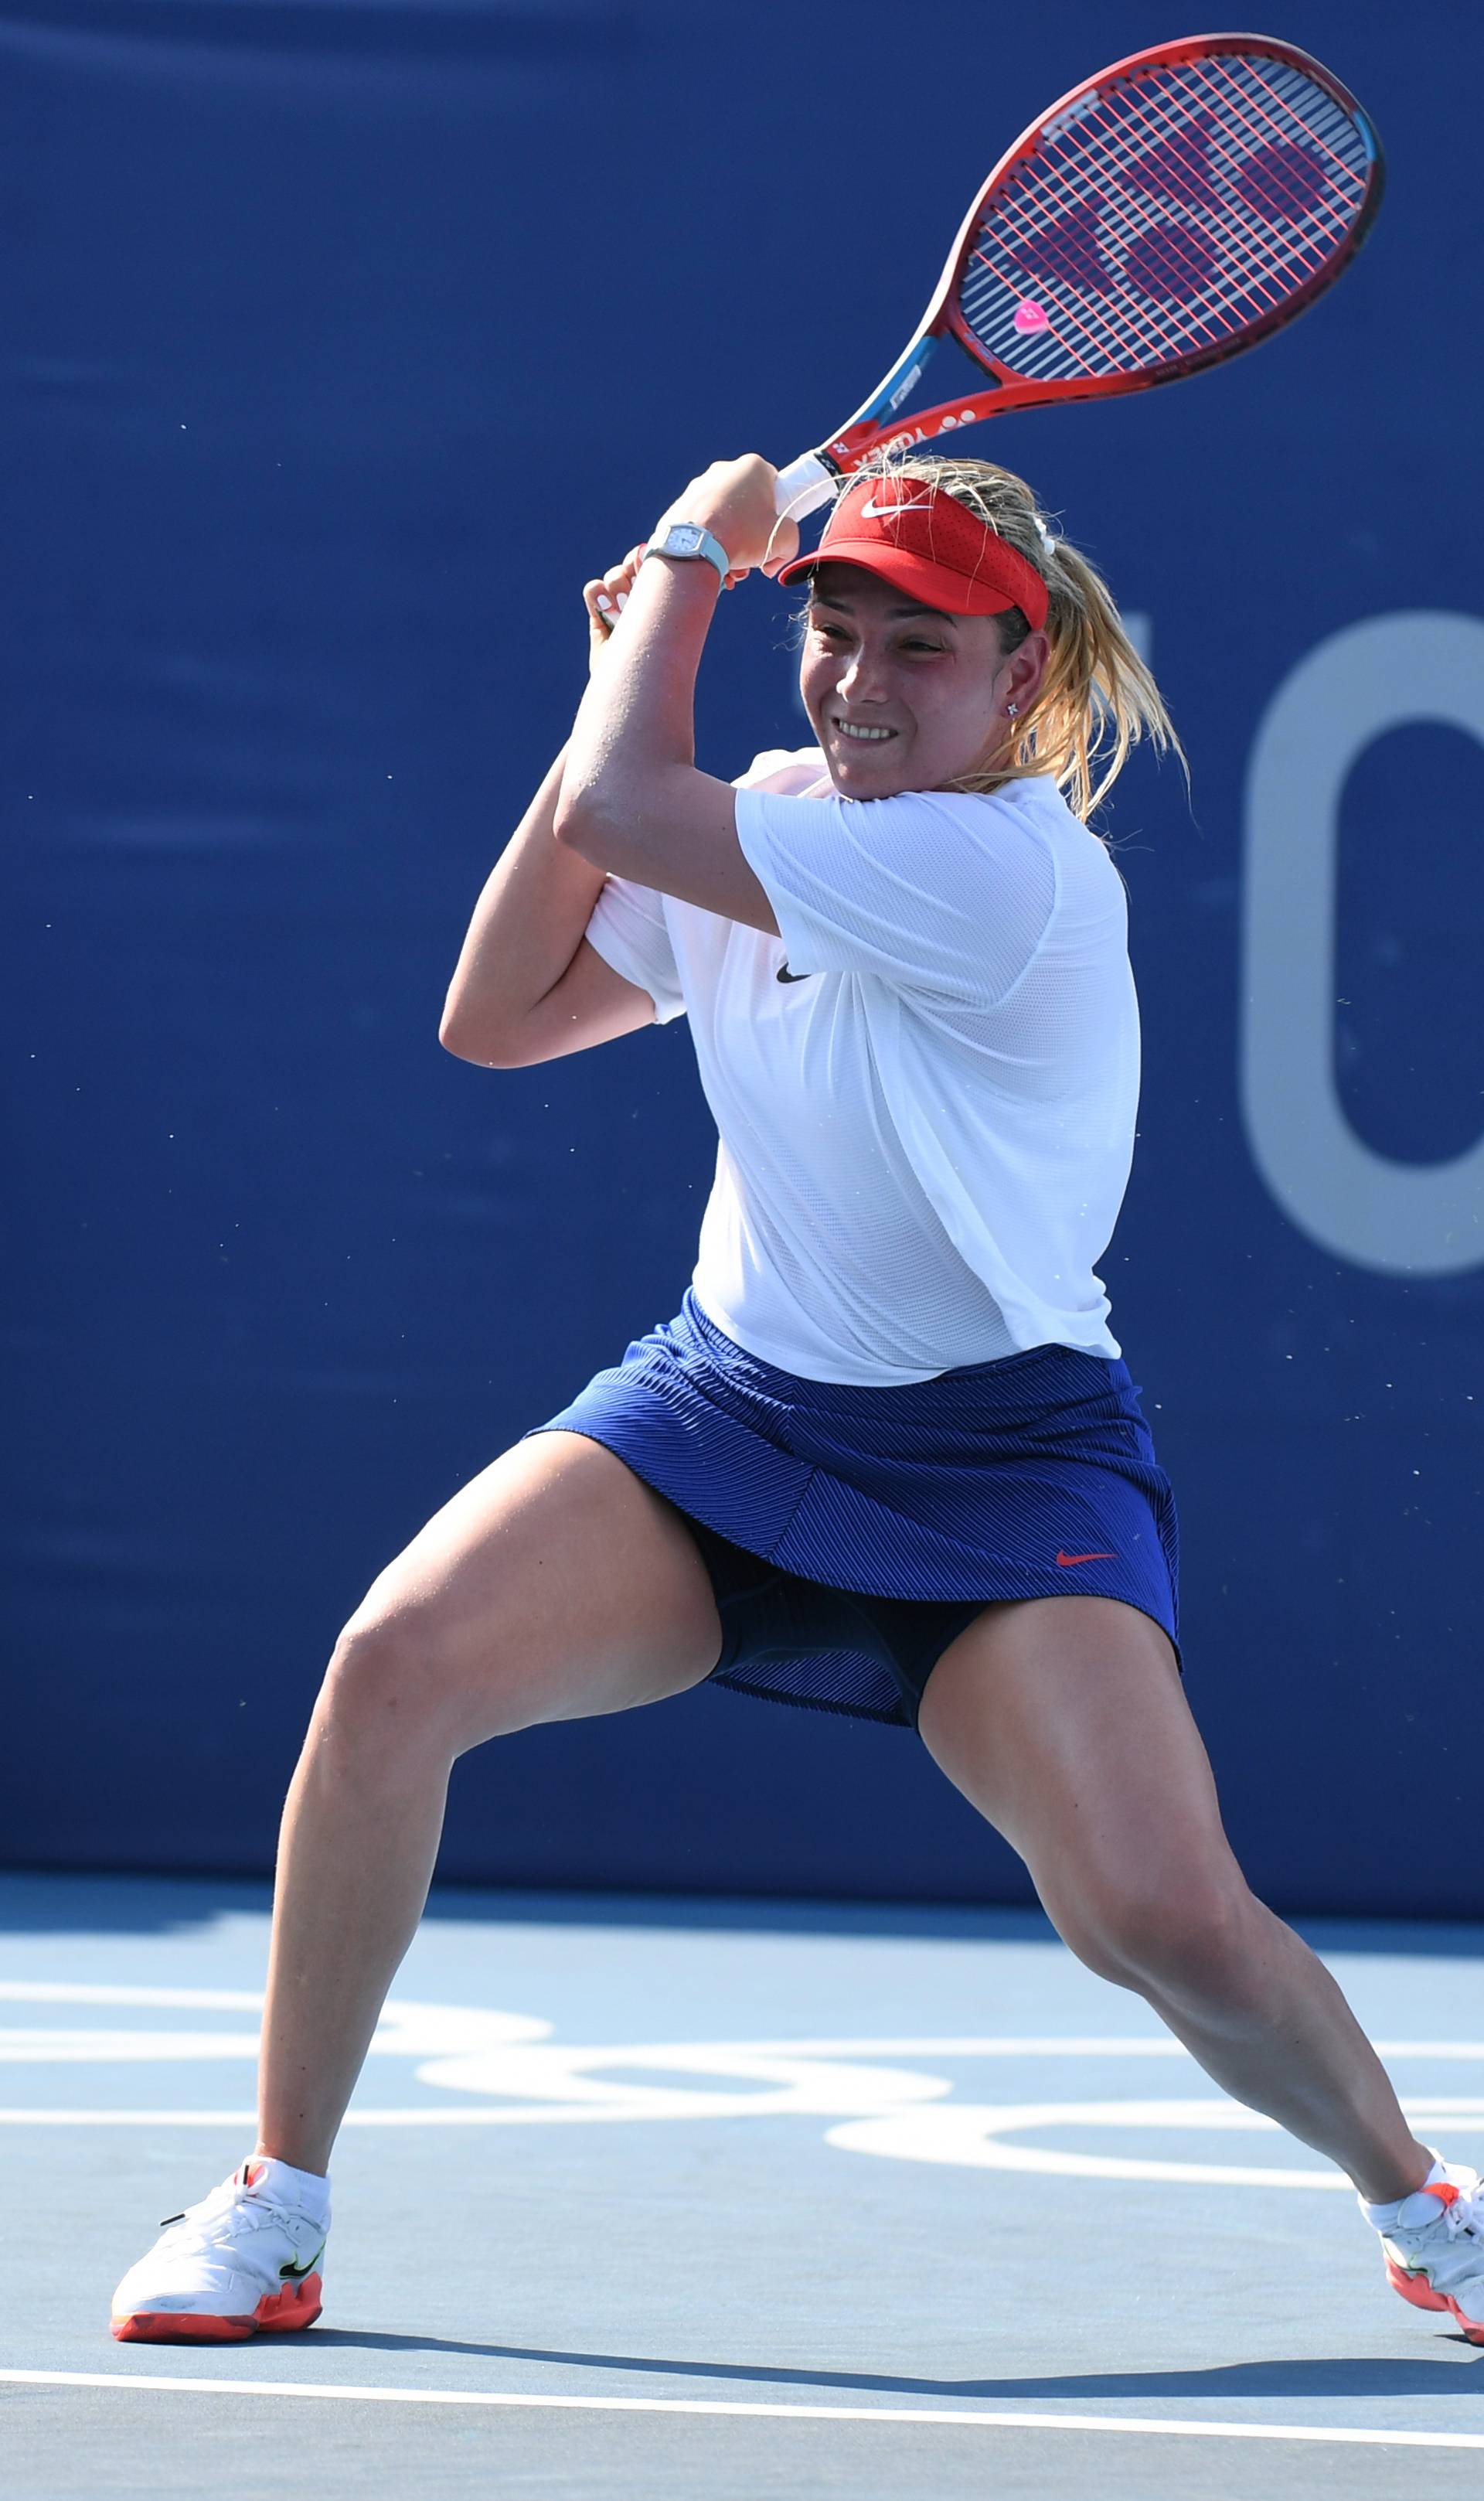 Tennis - Women's Singles - Round 1